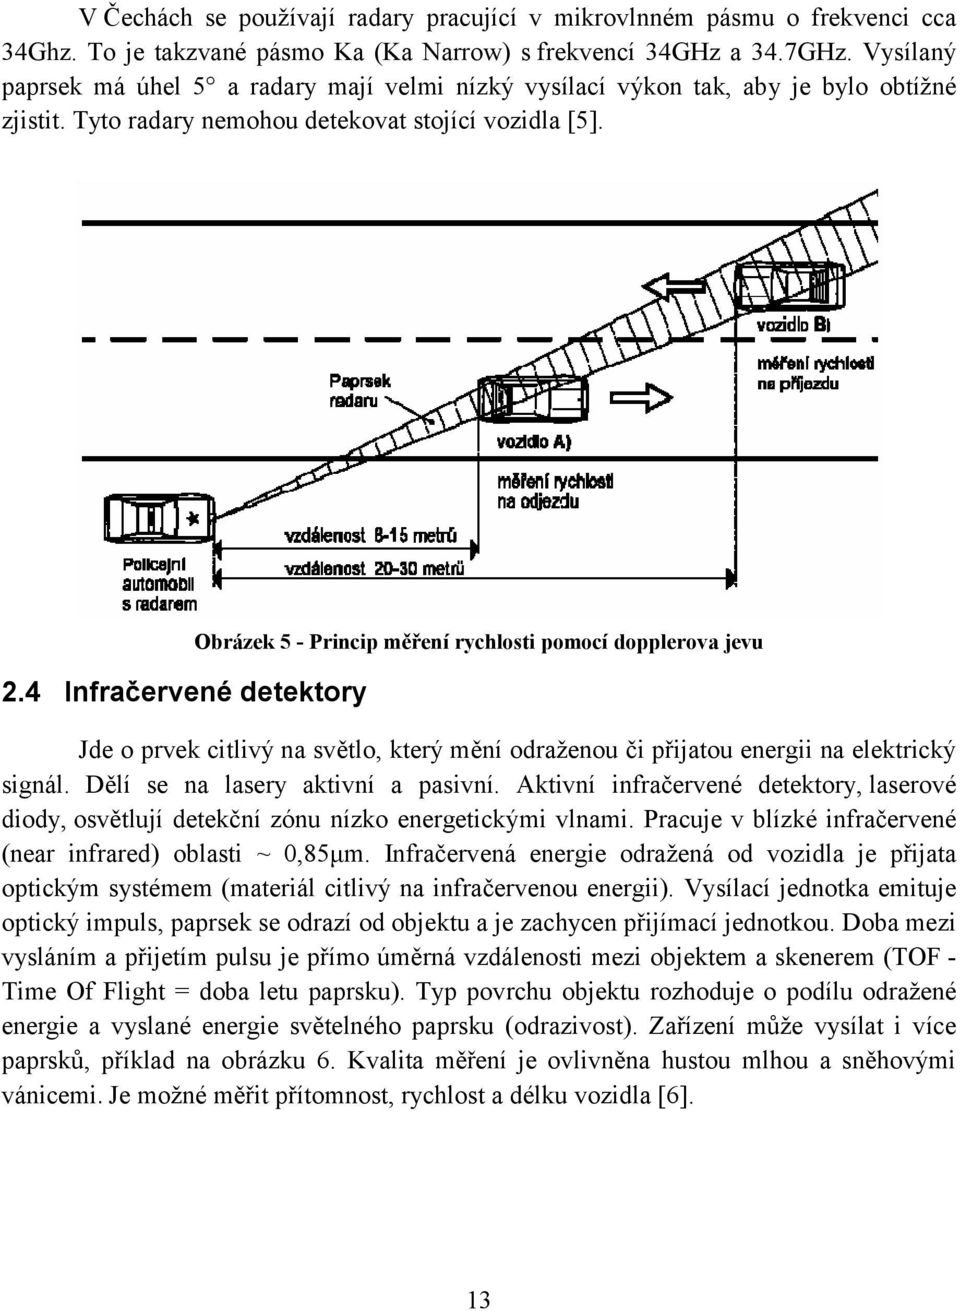 Obrázek 5 - Princip měření rychlosti pomocí dopplerova jevu 2.4 Infračervené detektory Jde o prvek citlivý na světlo, který mění odraženou či přijatou energii na elektrický signál.